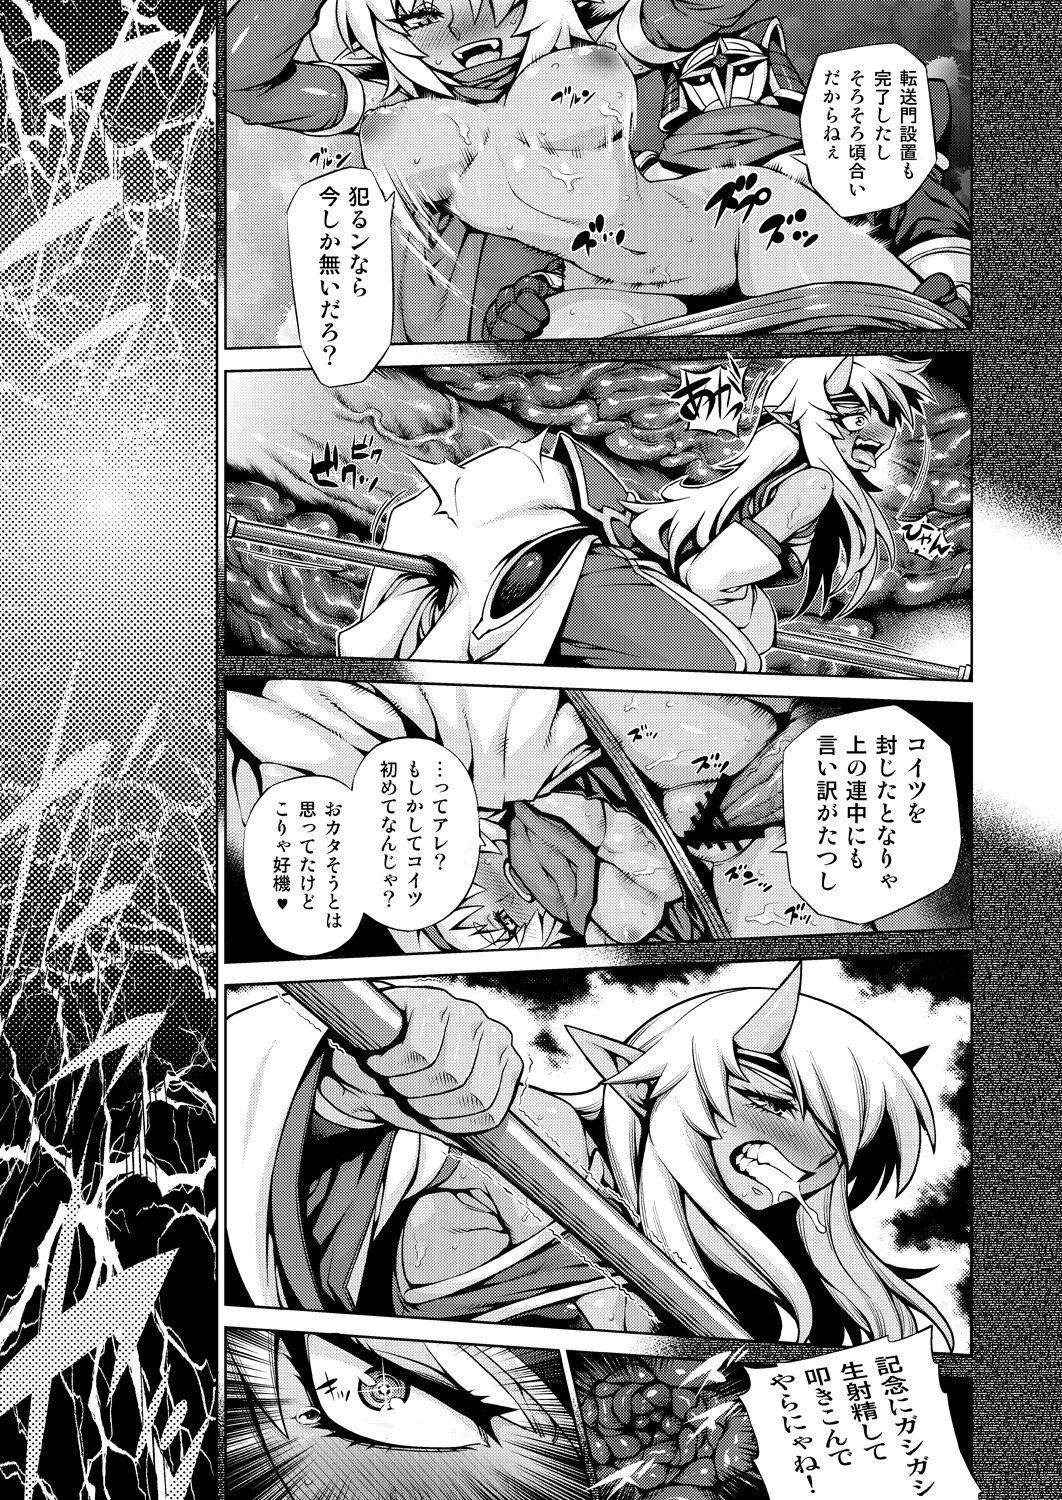 Pussy Orgasm Magatchan no jigen chōyaku dai sakusen purasu - Shinrabansho Vergon - Page 10